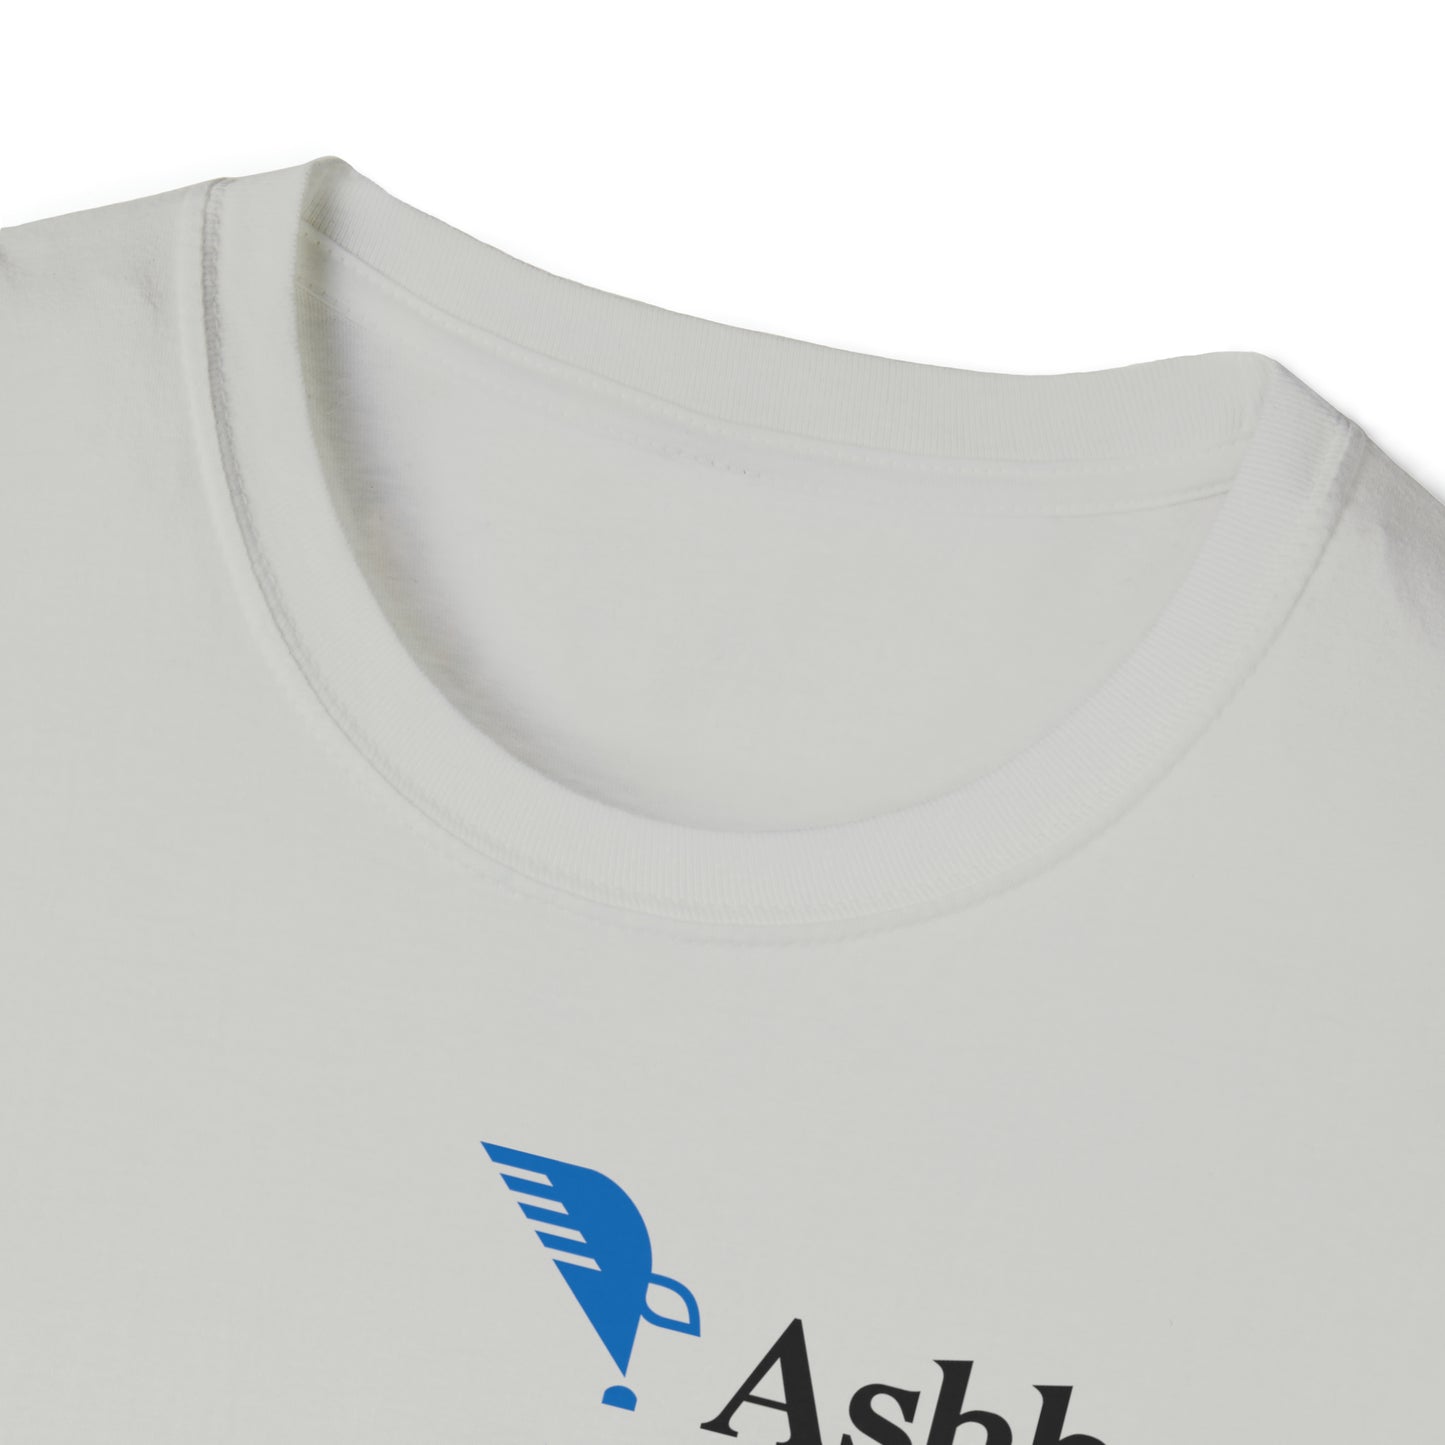 Ashbrook Mom Unisex Softstyle T-Shirt